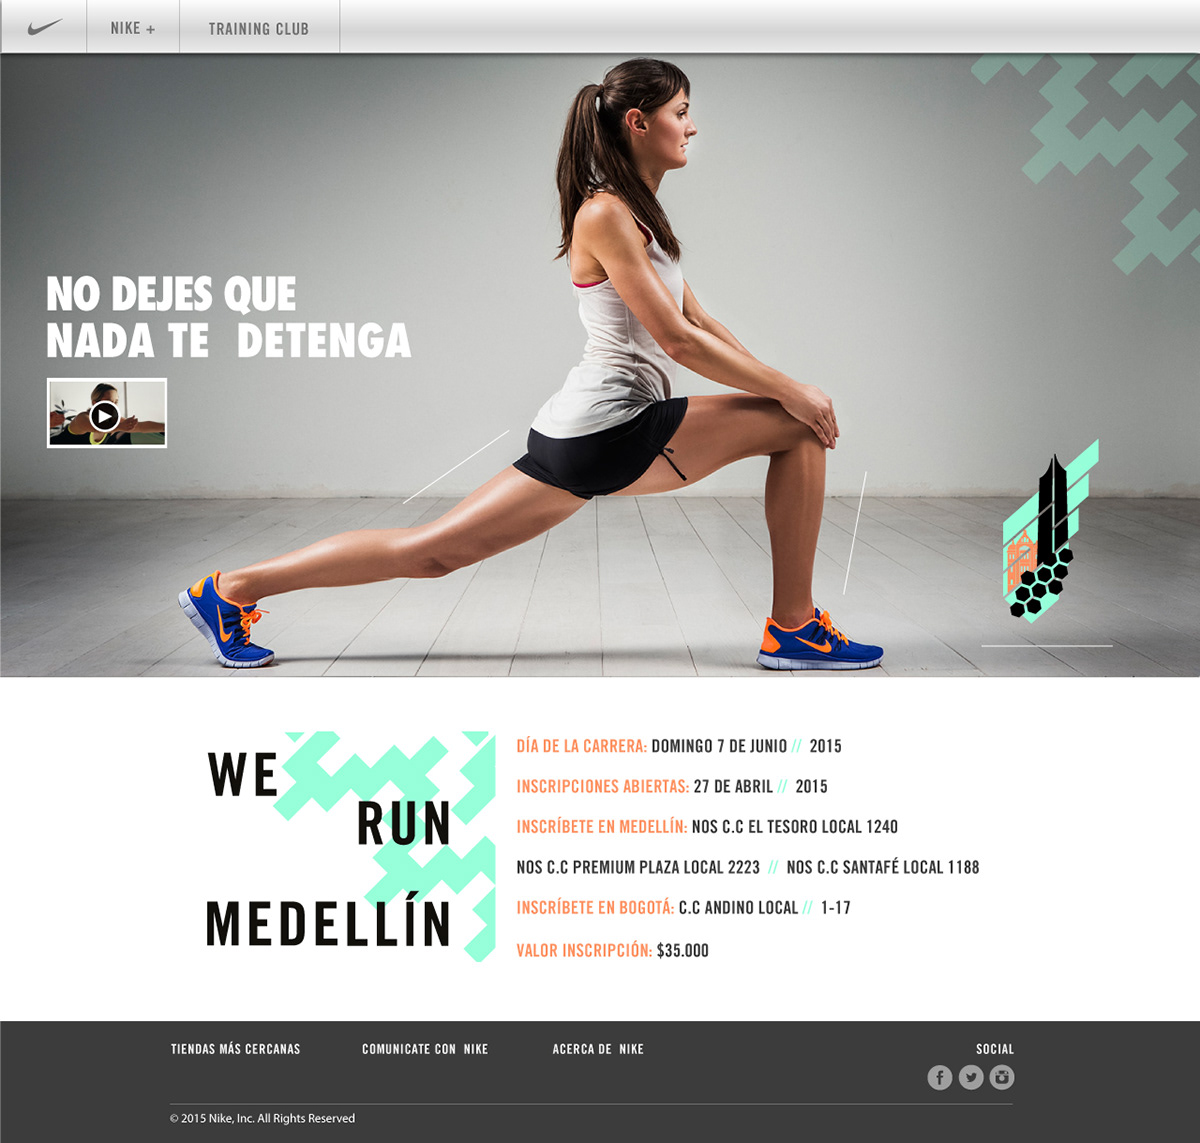 Nike nikerunning 10kMedellin justdoit Webdesign gallerydesign graphicdesign